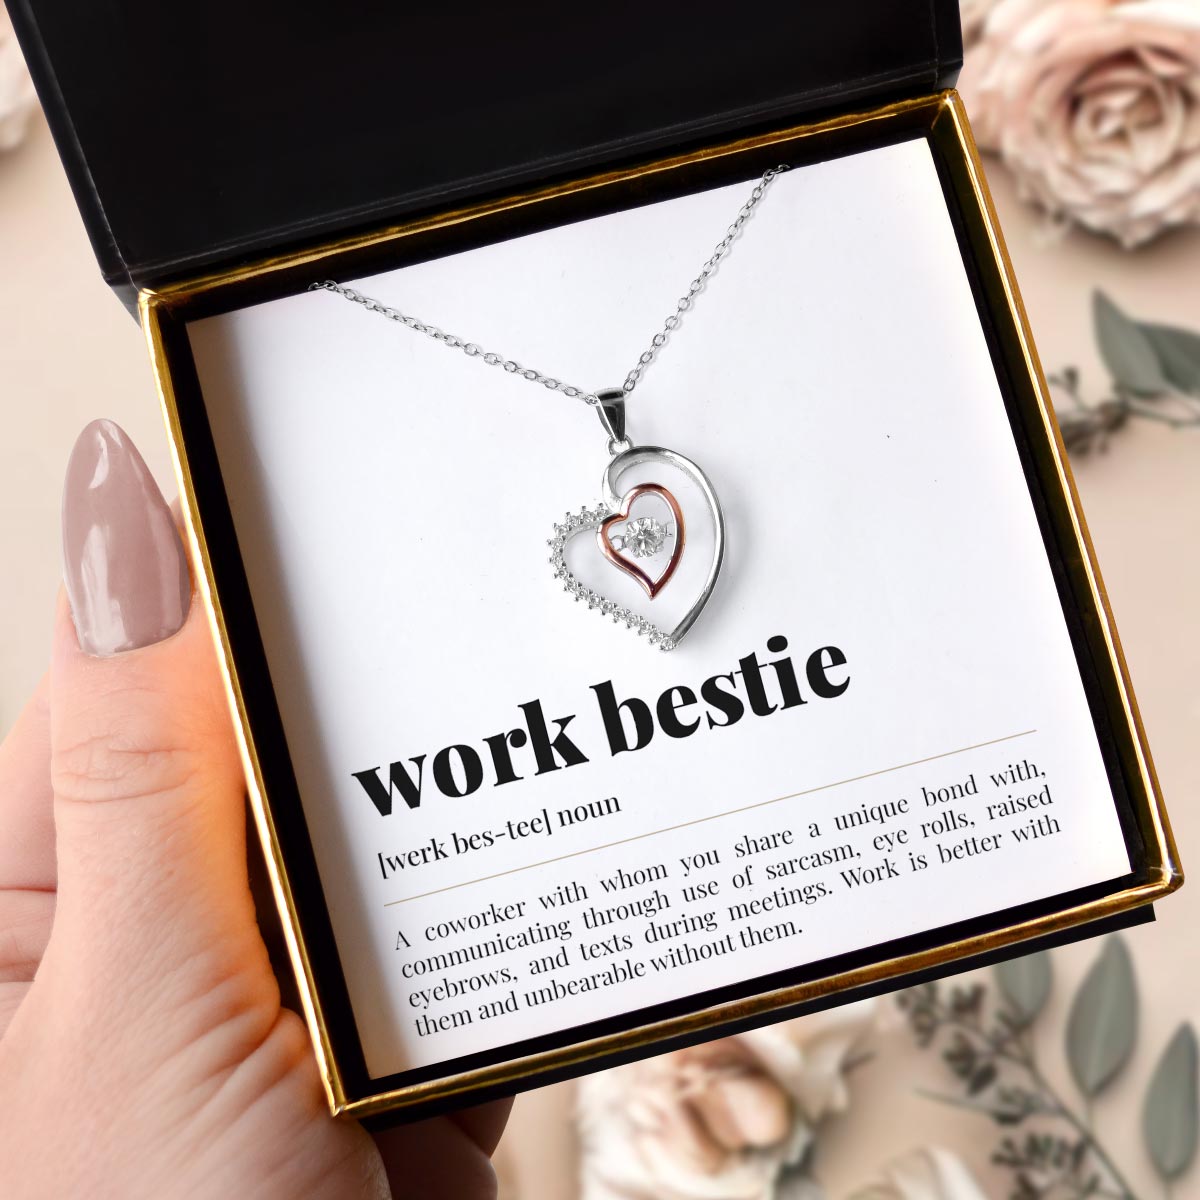 Work Bestie Noun - Luxe Heart Necklace Gift Set